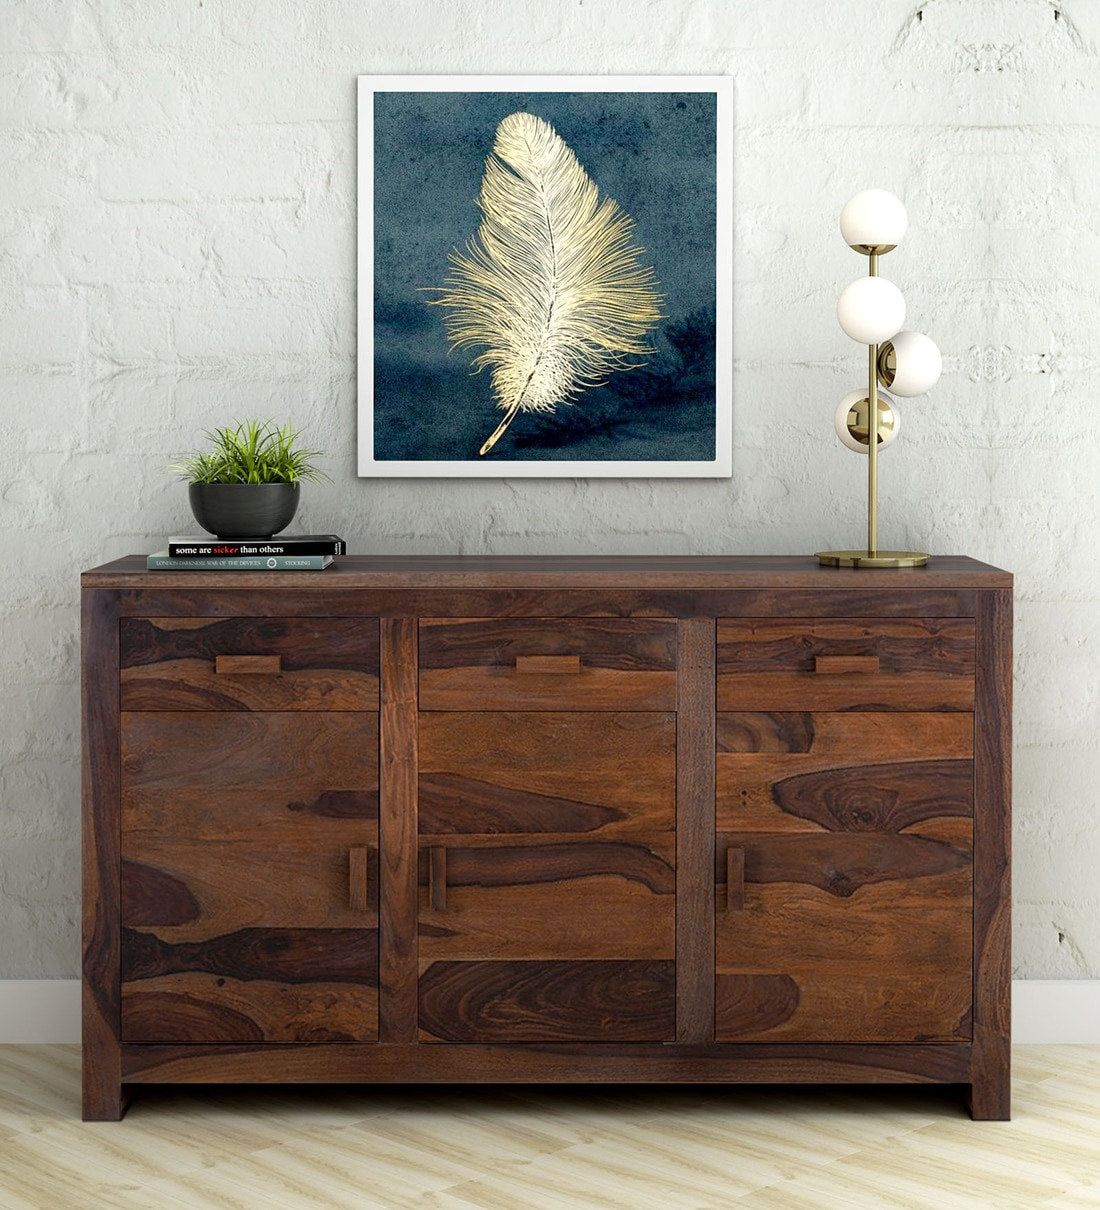 Acro sideboard cabinet for living room - Rajwada Furnish